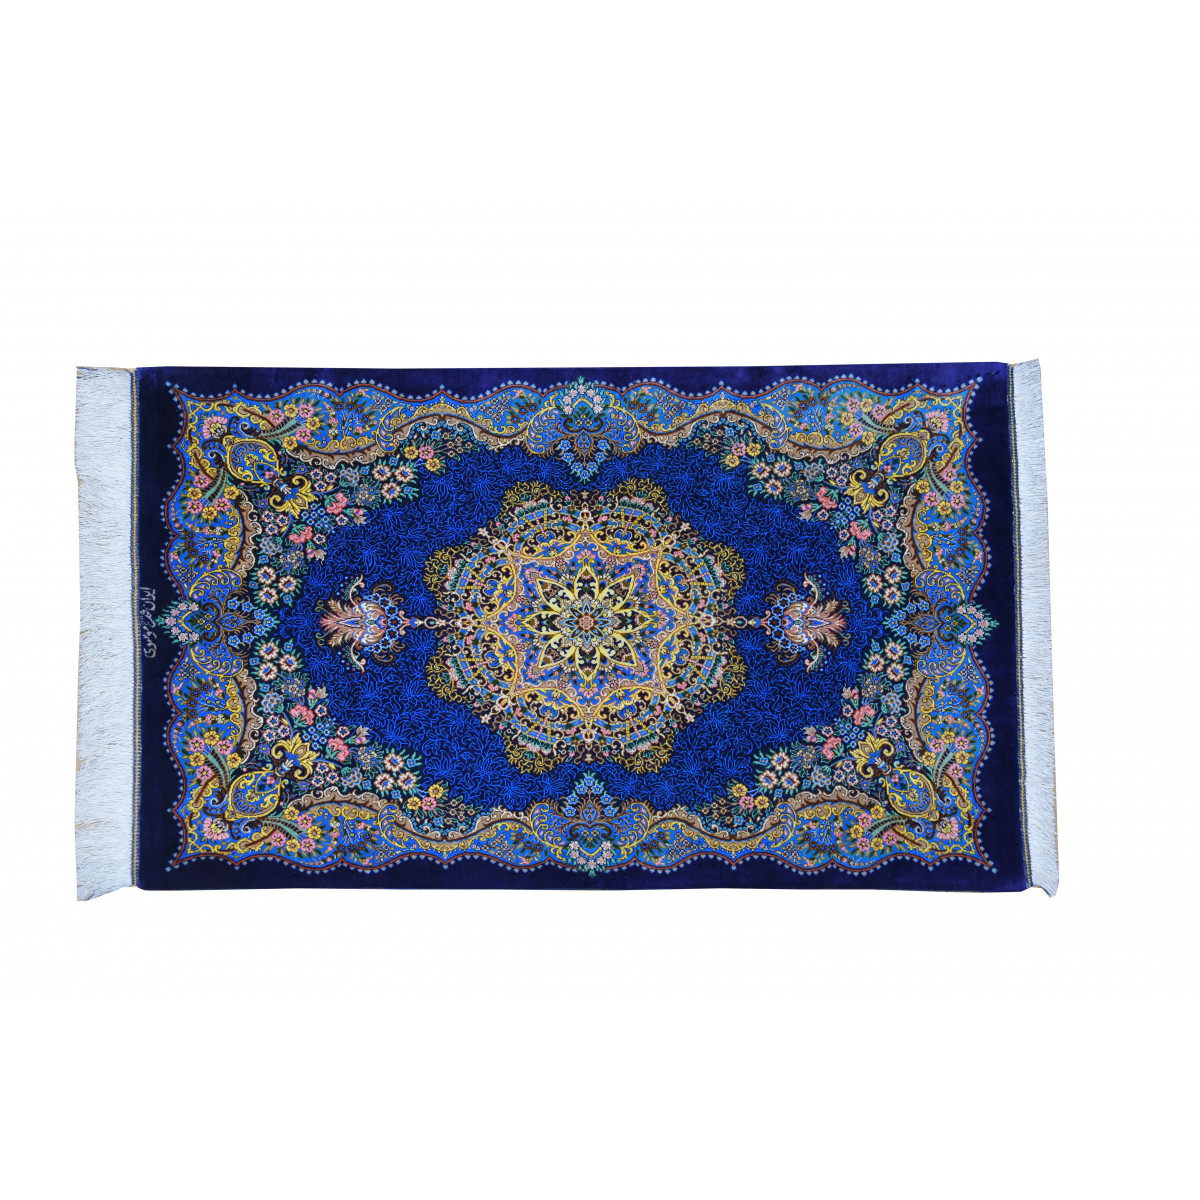 キミヤペルシャ絨毯ギャラリー | KIMIYA PERSIAN CARPET GALLERY